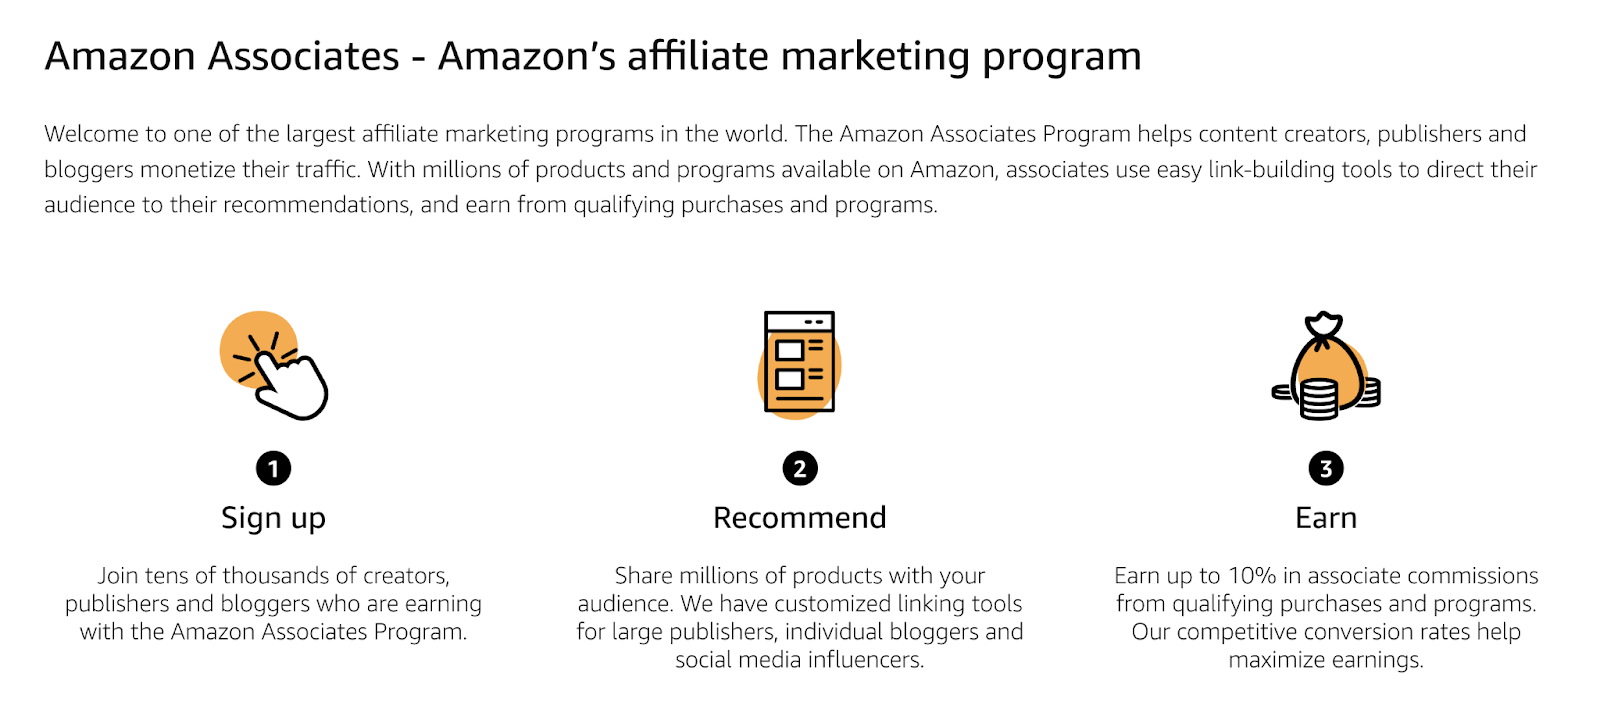 Amazon's affiliate marketing program explained